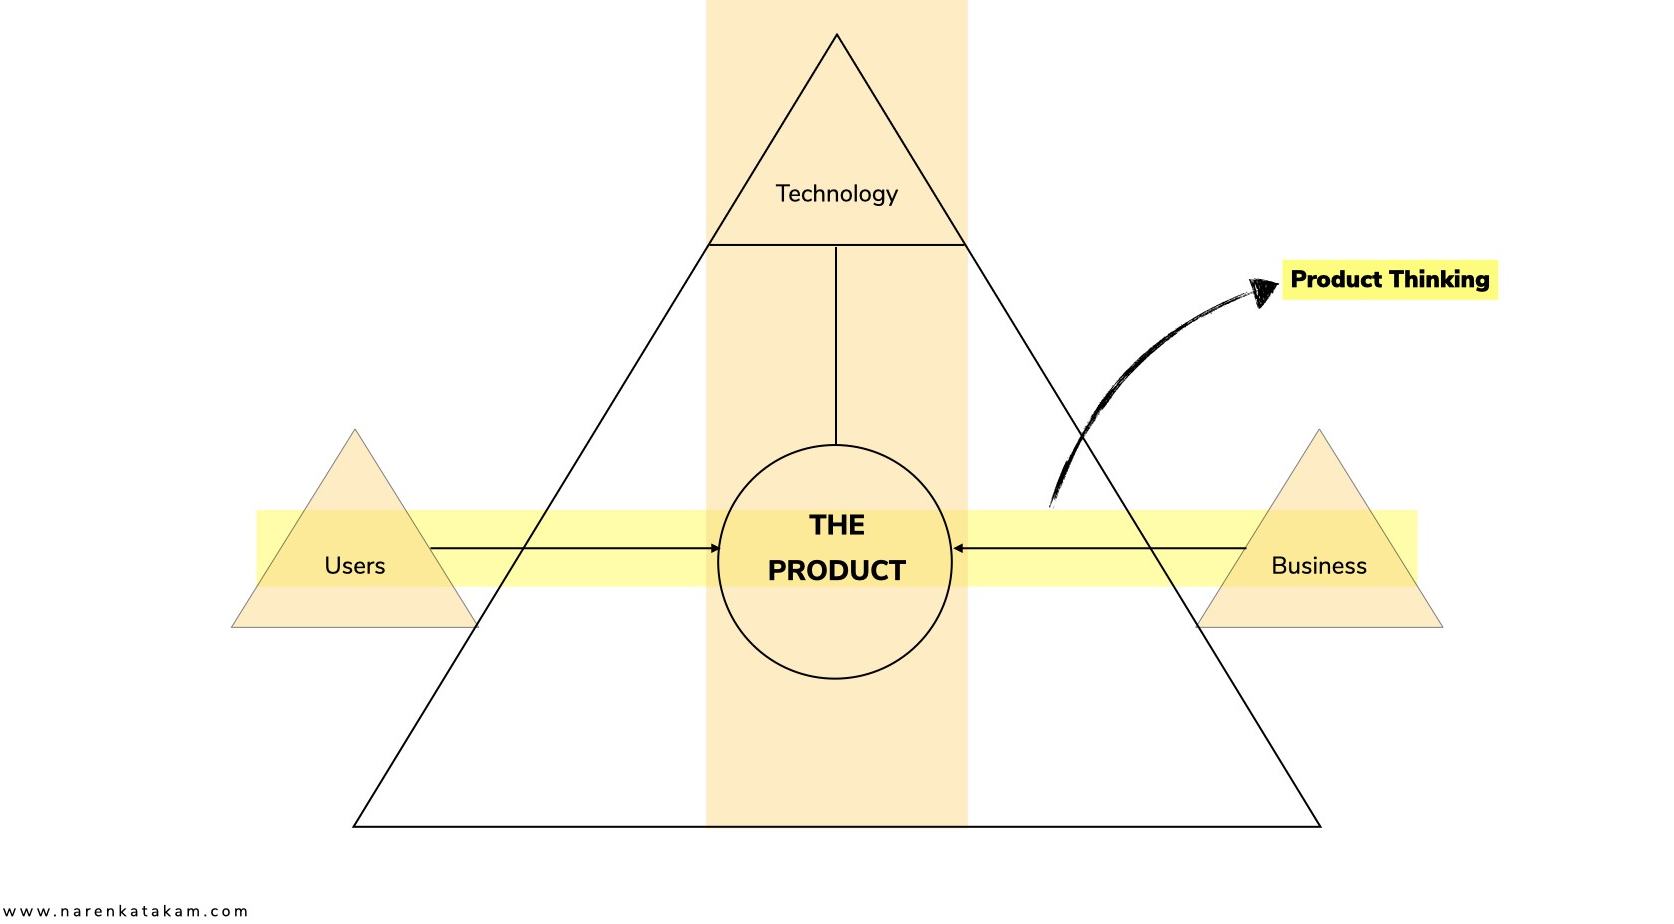 Product Thinking elements